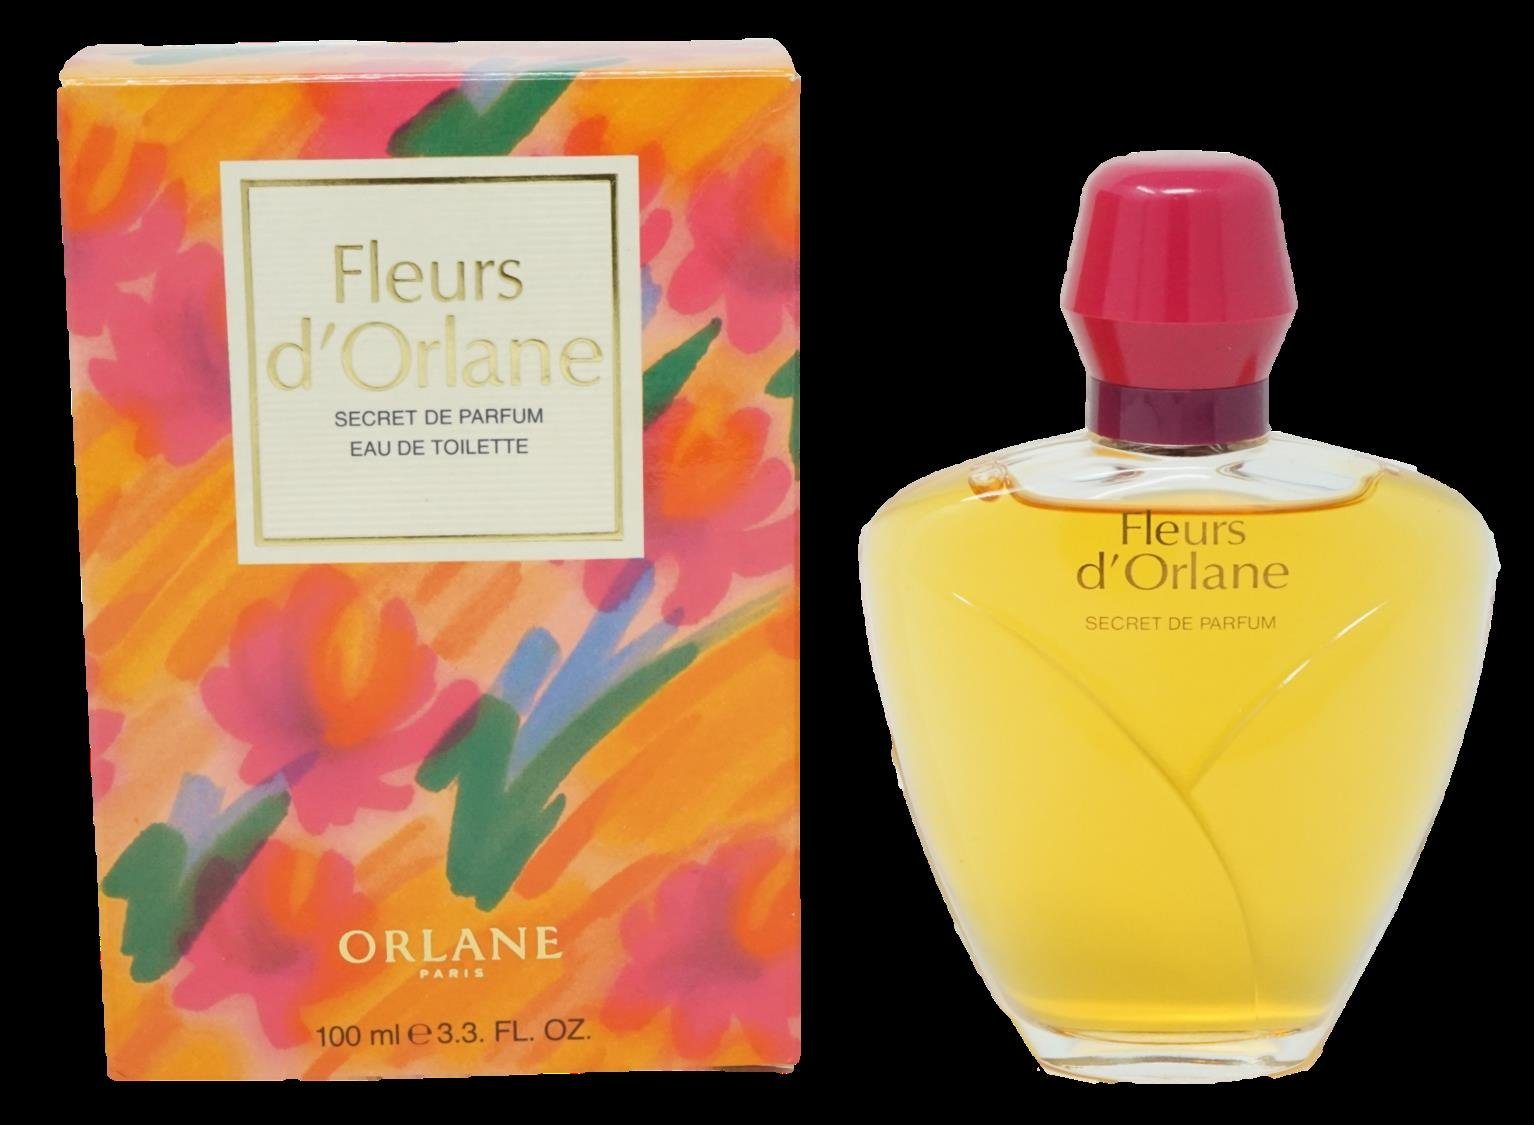 Eau Eau Toilette 100 Toilette Parfum Orlane de ml d'Orlane de Fleurs Secret de Orlane